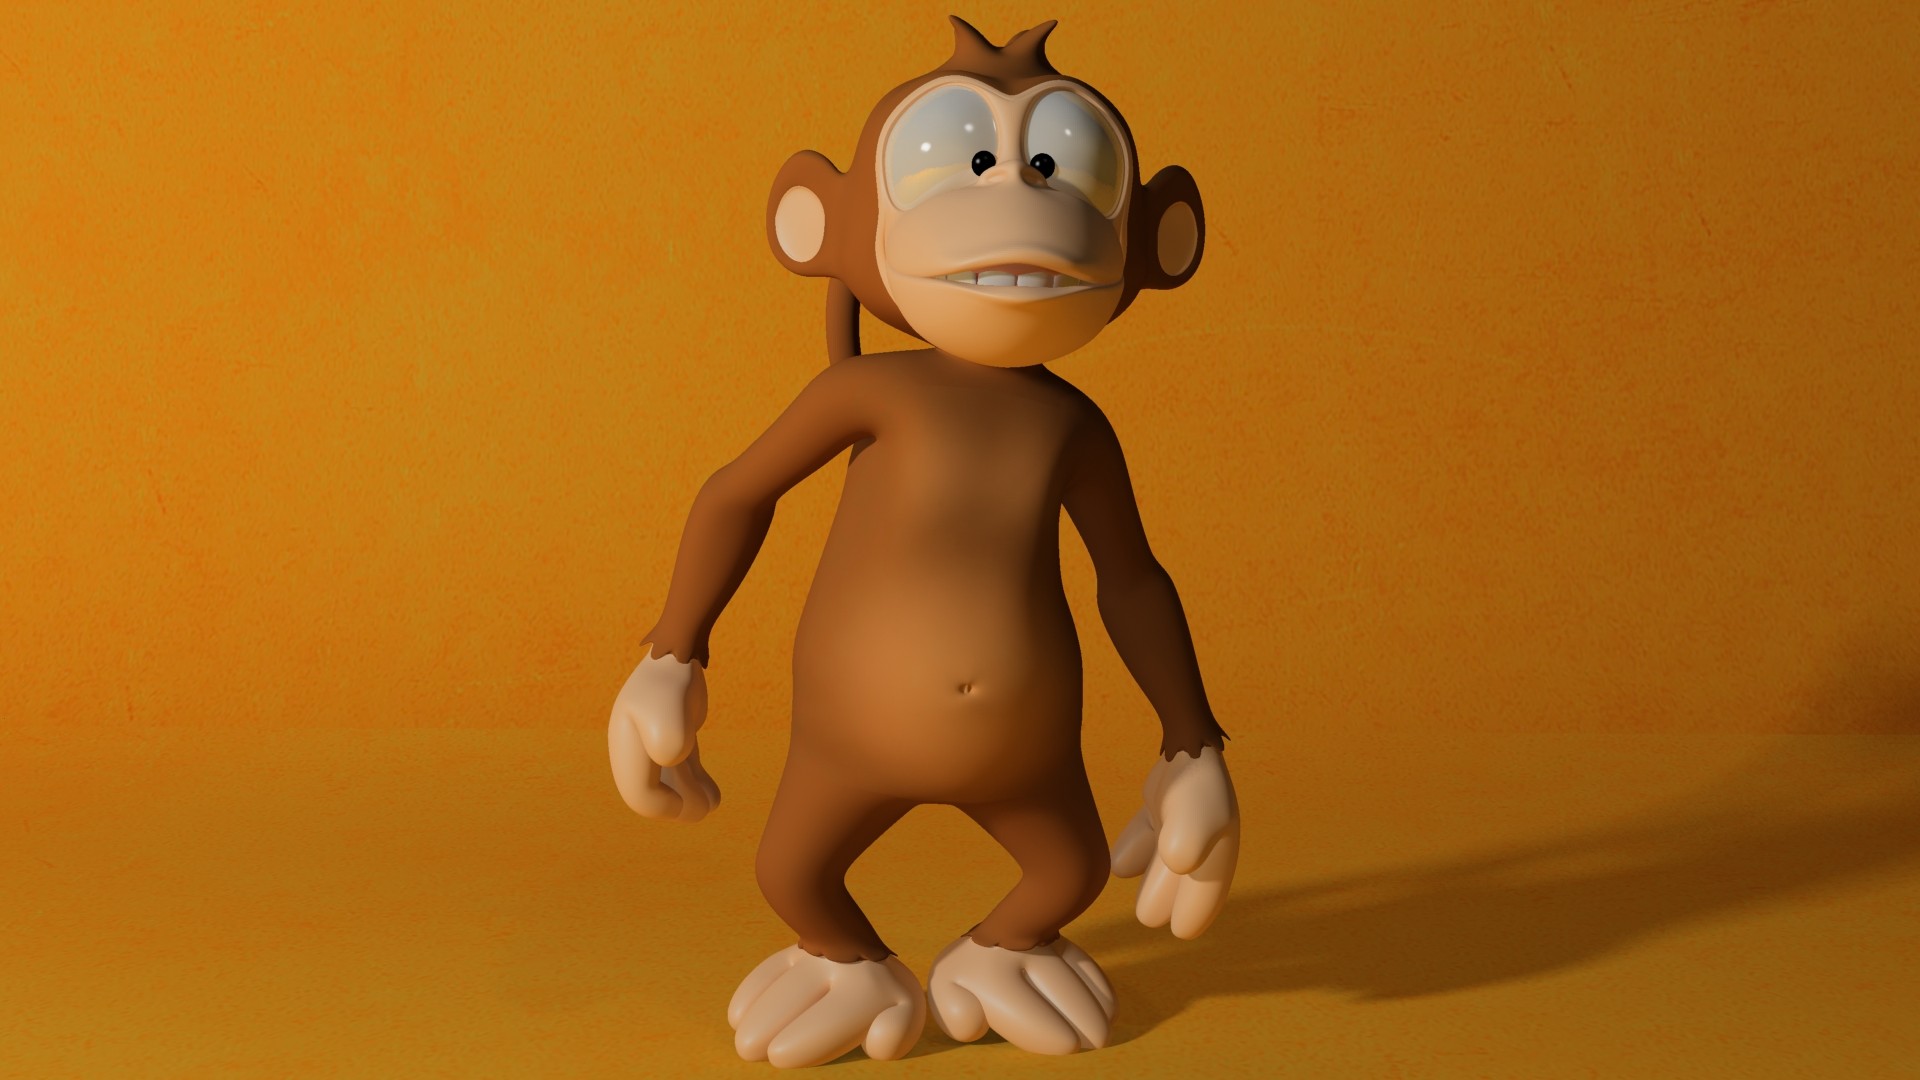 1920x1080 Cartoon Monkey 3D